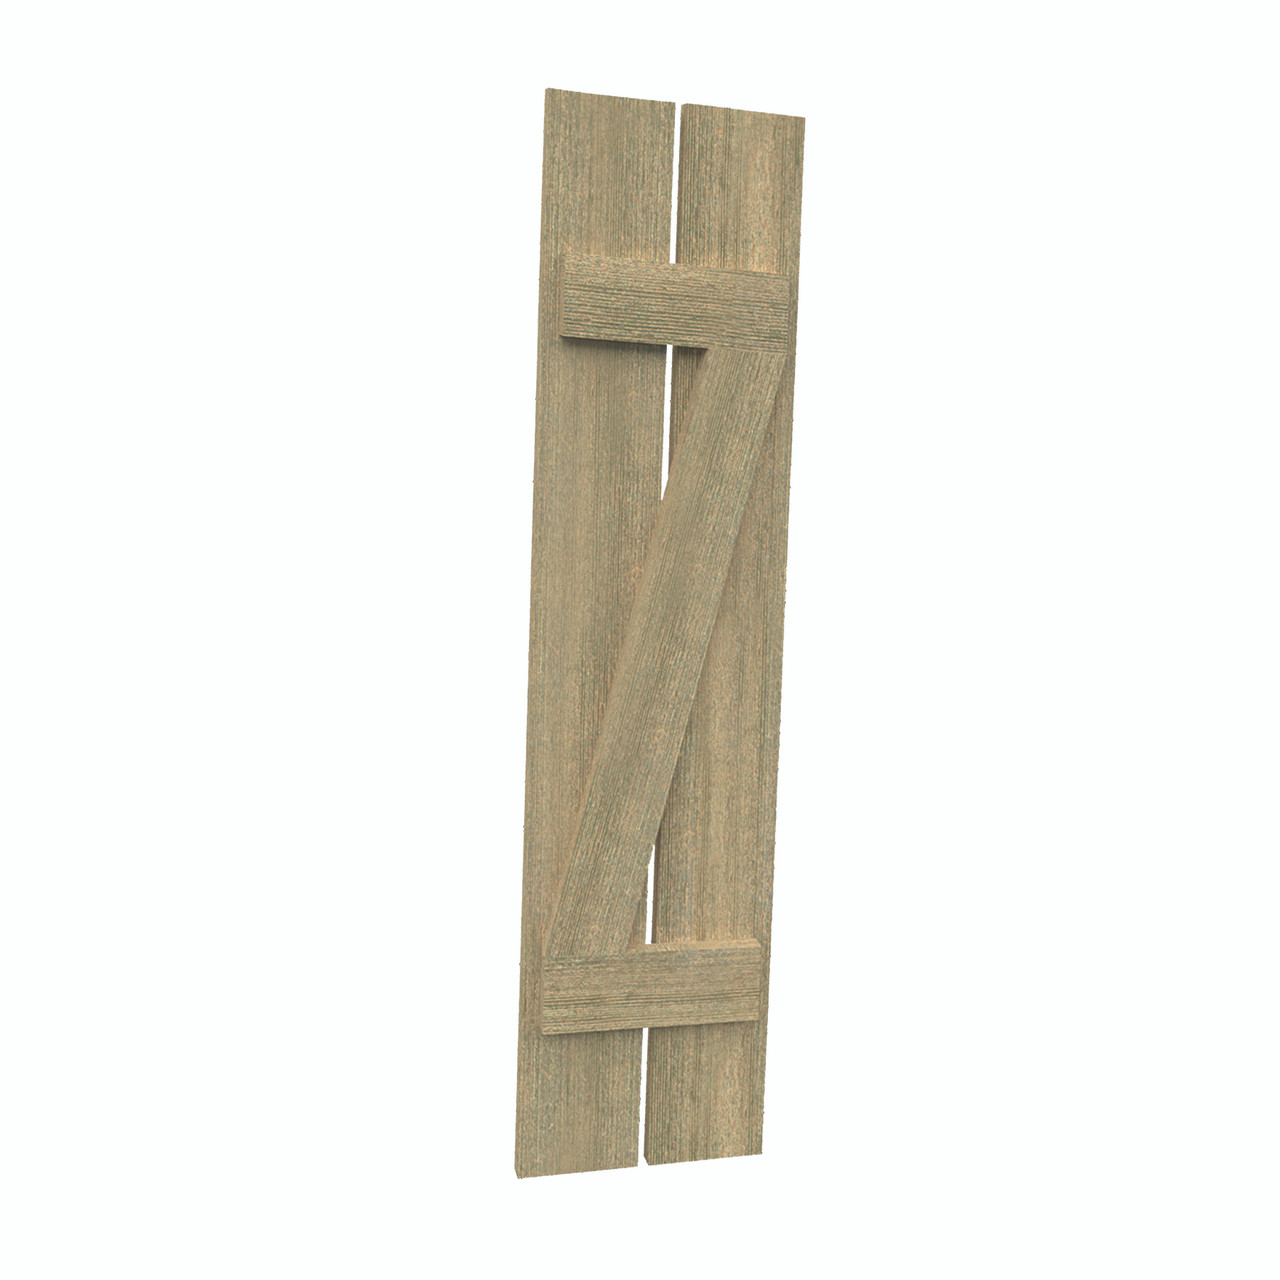 12 inch by 110 inch Plank Shutter with 2-Plank, Z-Batten